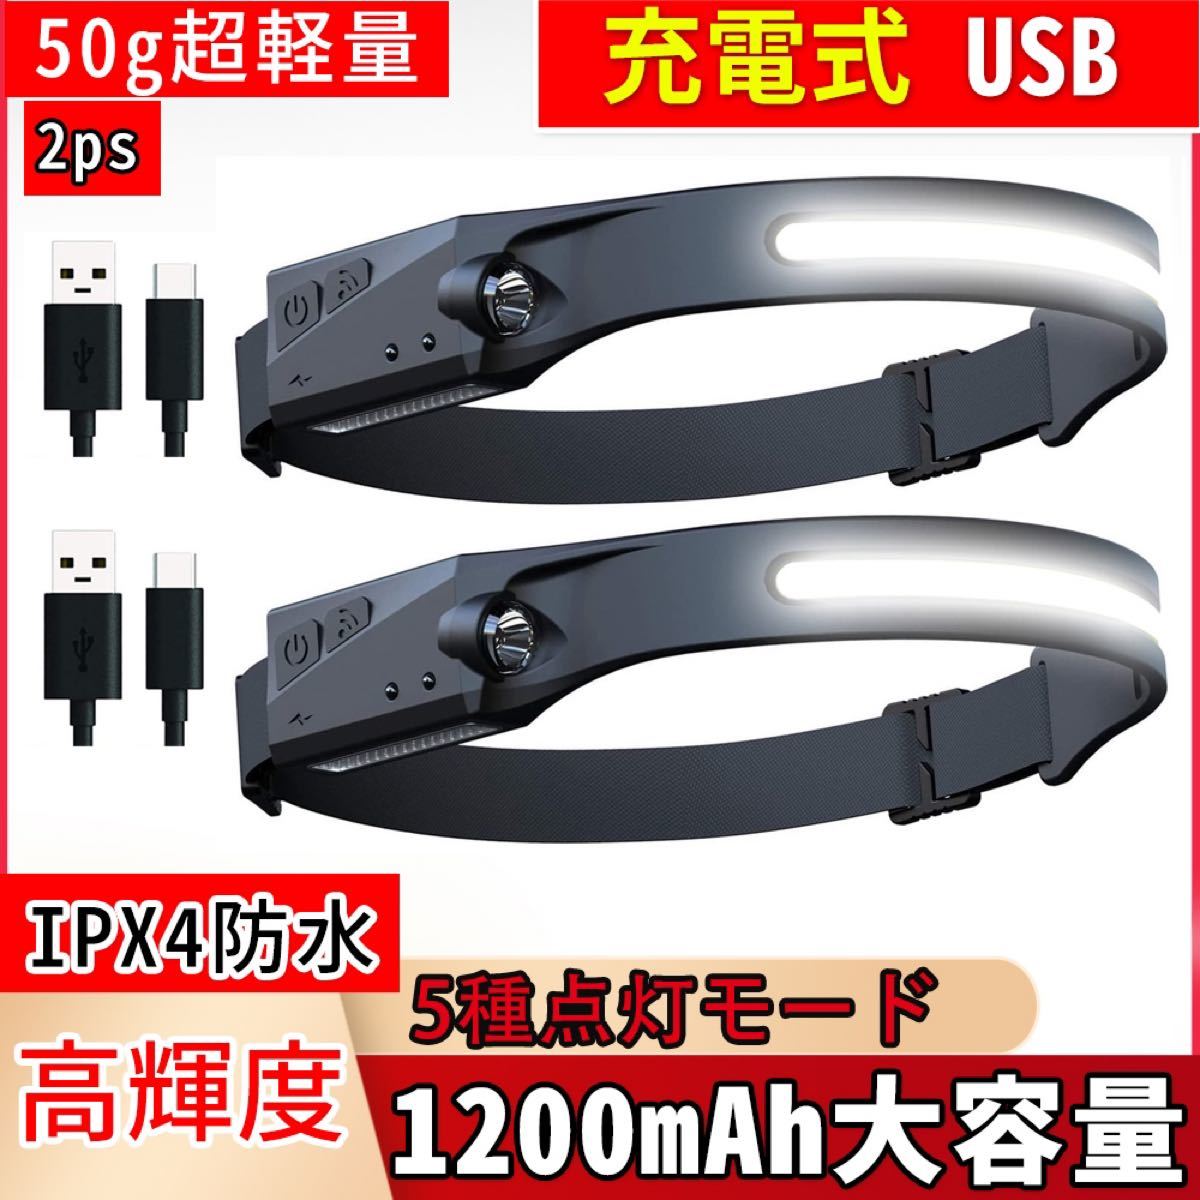 ヘッドライト 充電式 USB 5種点灯50g超軽量高輝度IPX4防水超軽量2ps ヘッドランプ